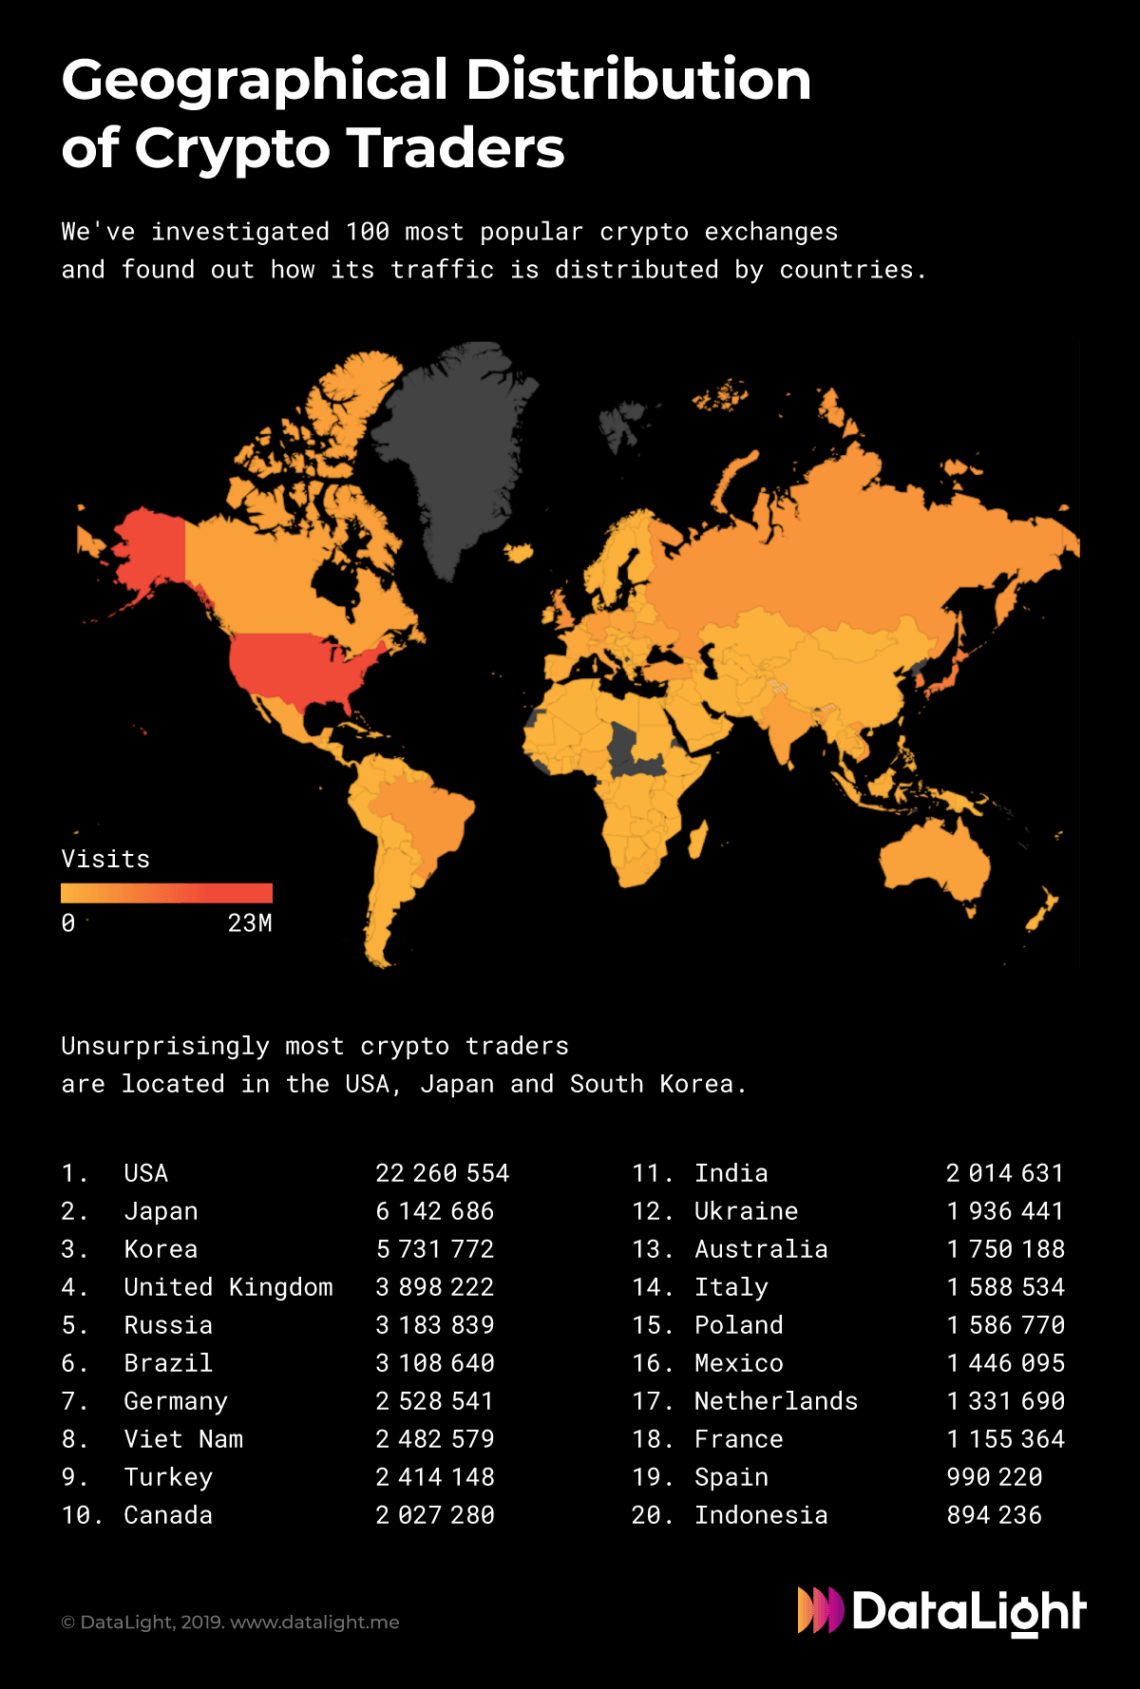 Dünyada en fazla kripto para ticareti yapan ülkelerden birisi Türkiye